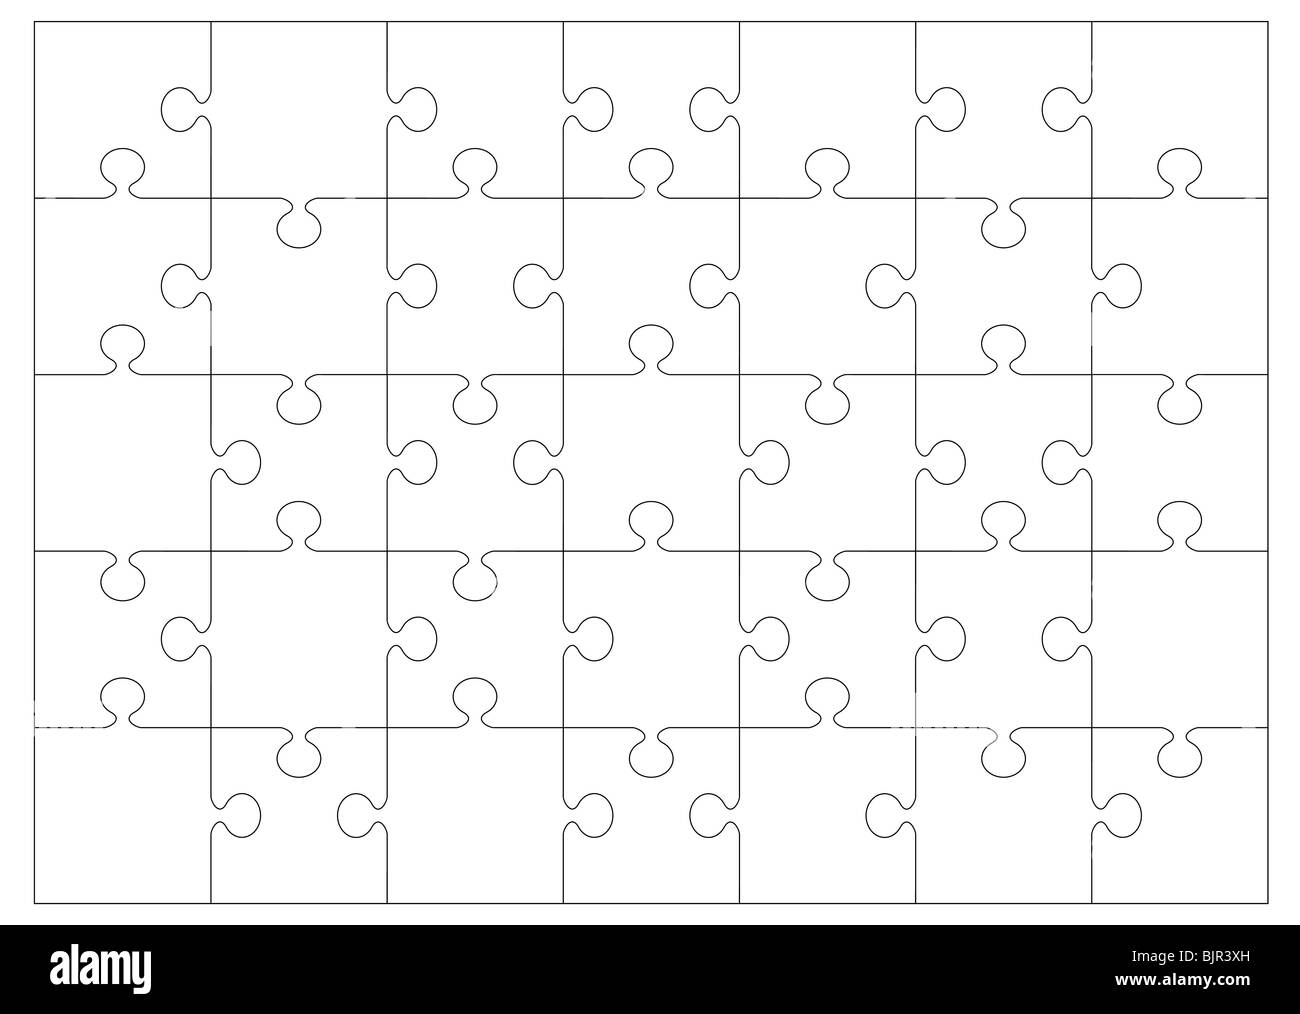 Schwarz / weiß Puzzle oder Rätsel Kontur, die Sie an Ihr eigenes Bild oder  Bild überlagern können Stockfotografie - Alamy